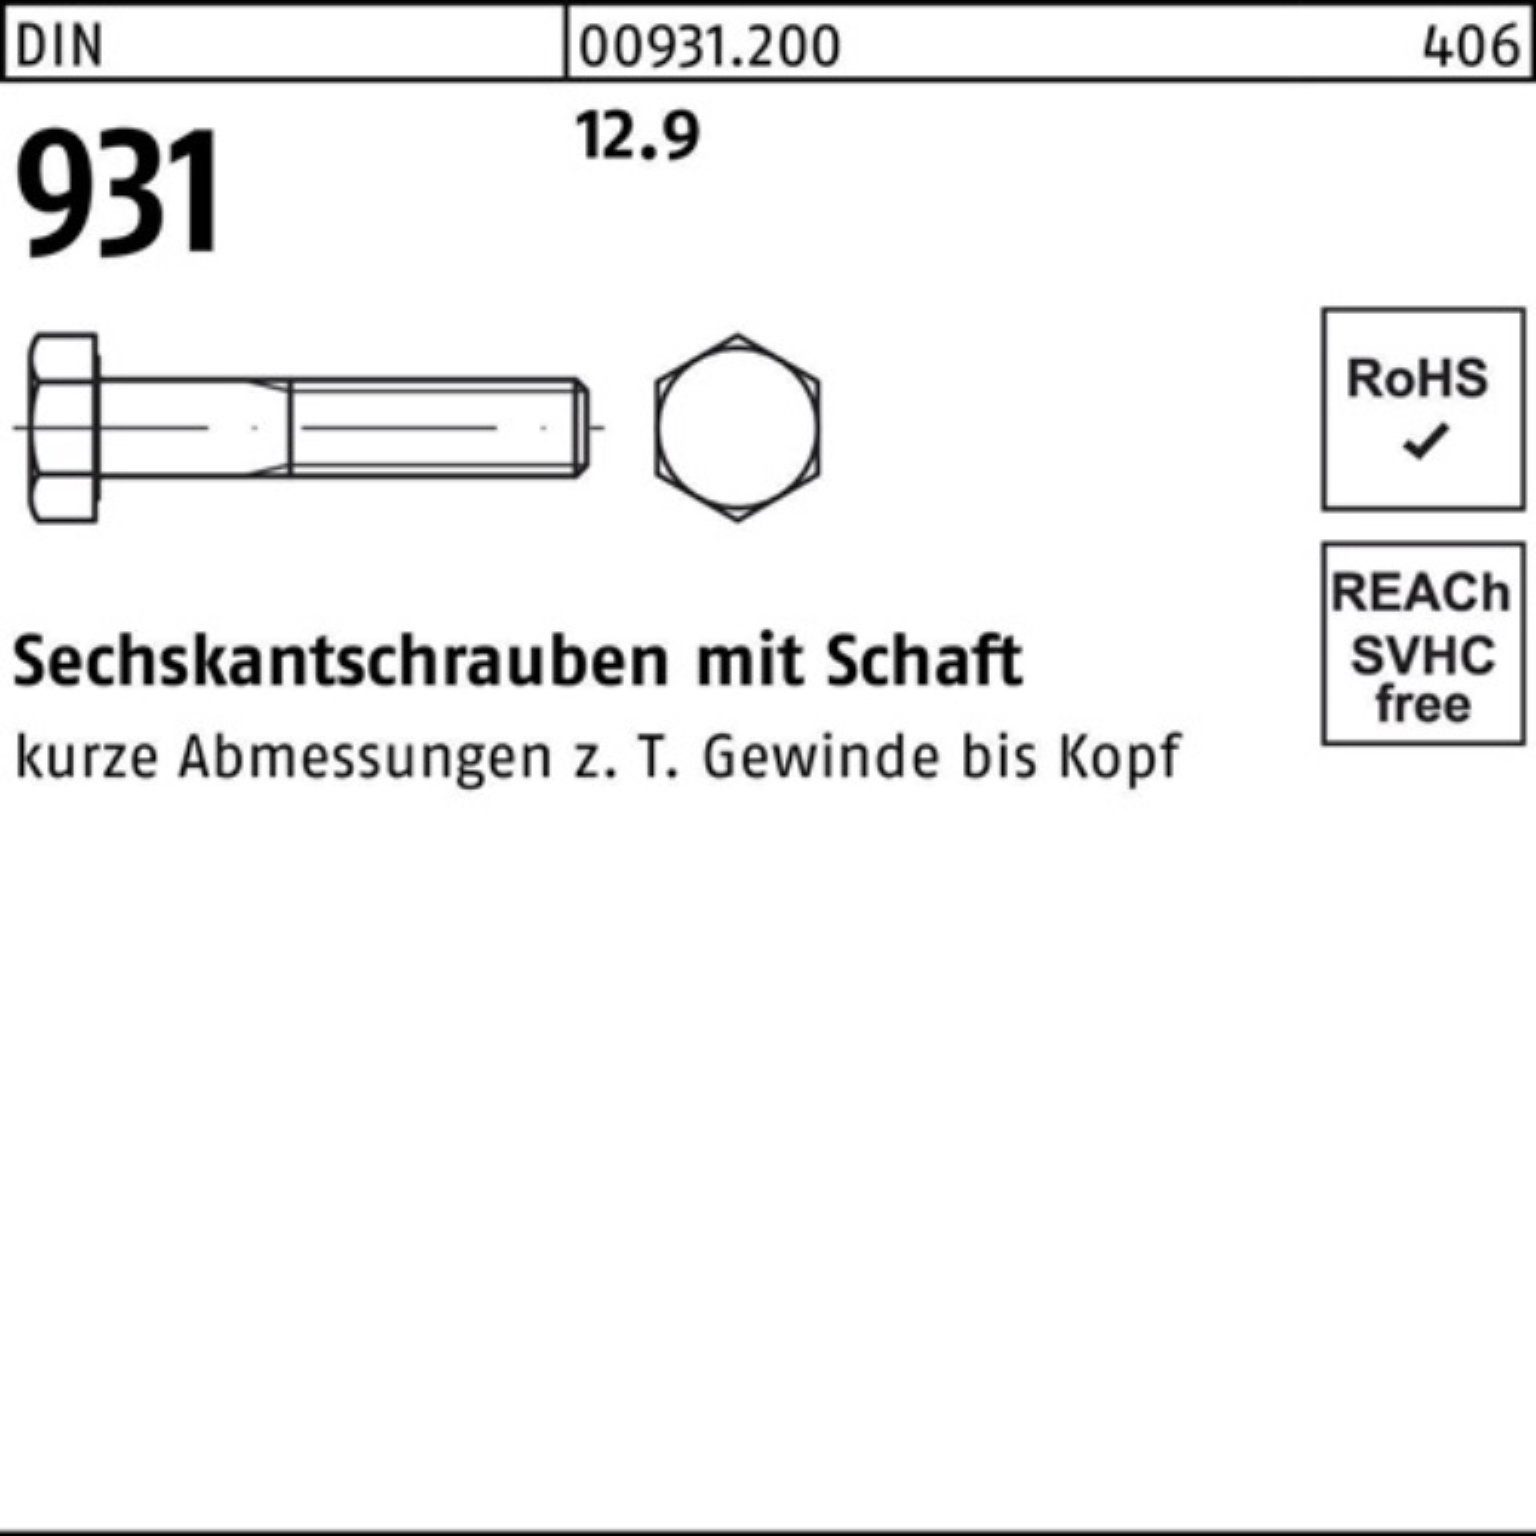 Reyher Sechskantschraube 100er 5 M30x DIN 110 Stück Schaft 931 DIN Pack Sechskantschraube 12.9